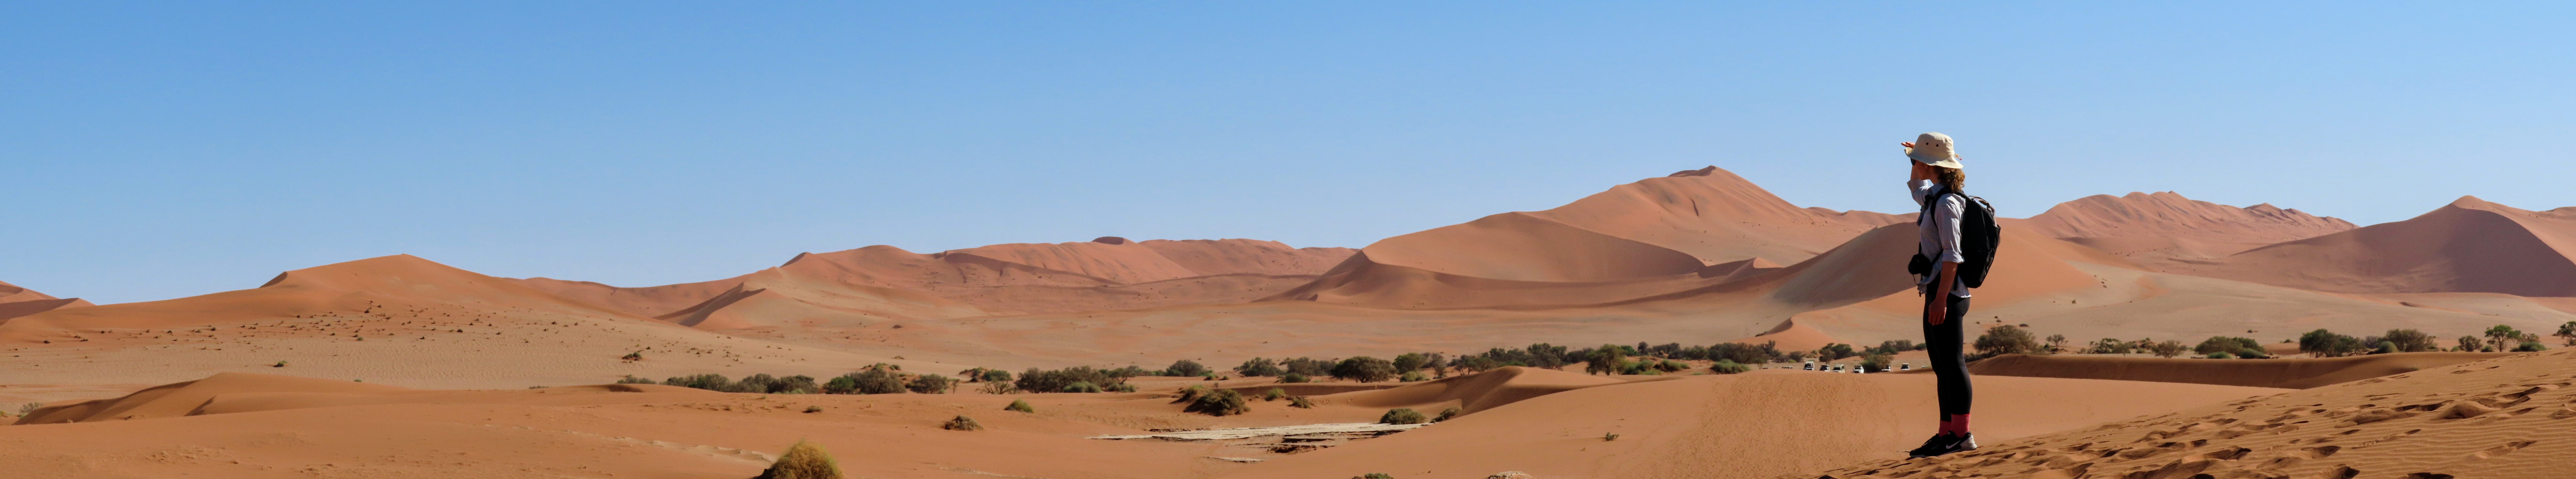 Panorama od dunes in Sossusvlei Namibia